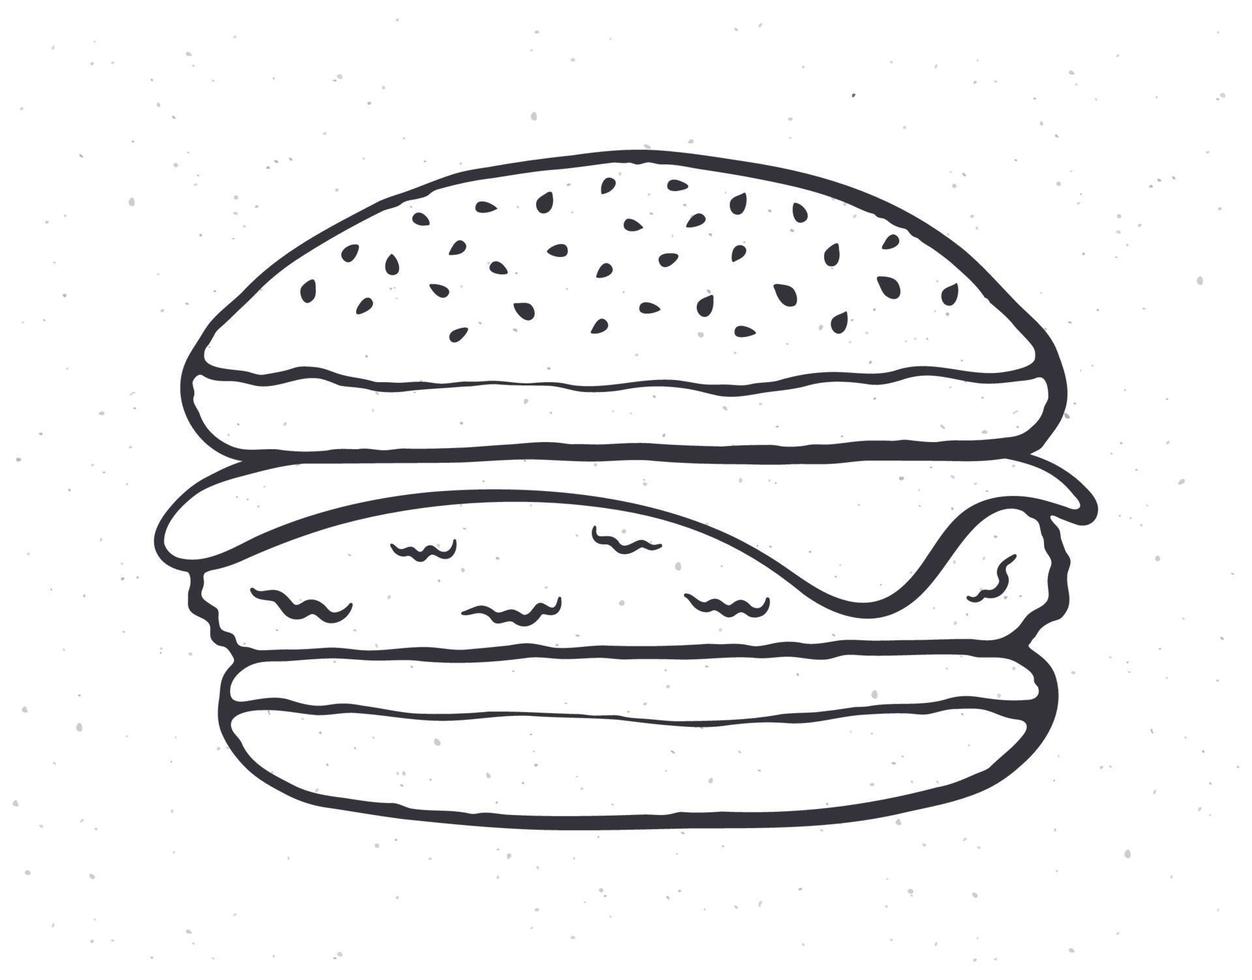 garabatear ilustración de hamburguesa con queso vector